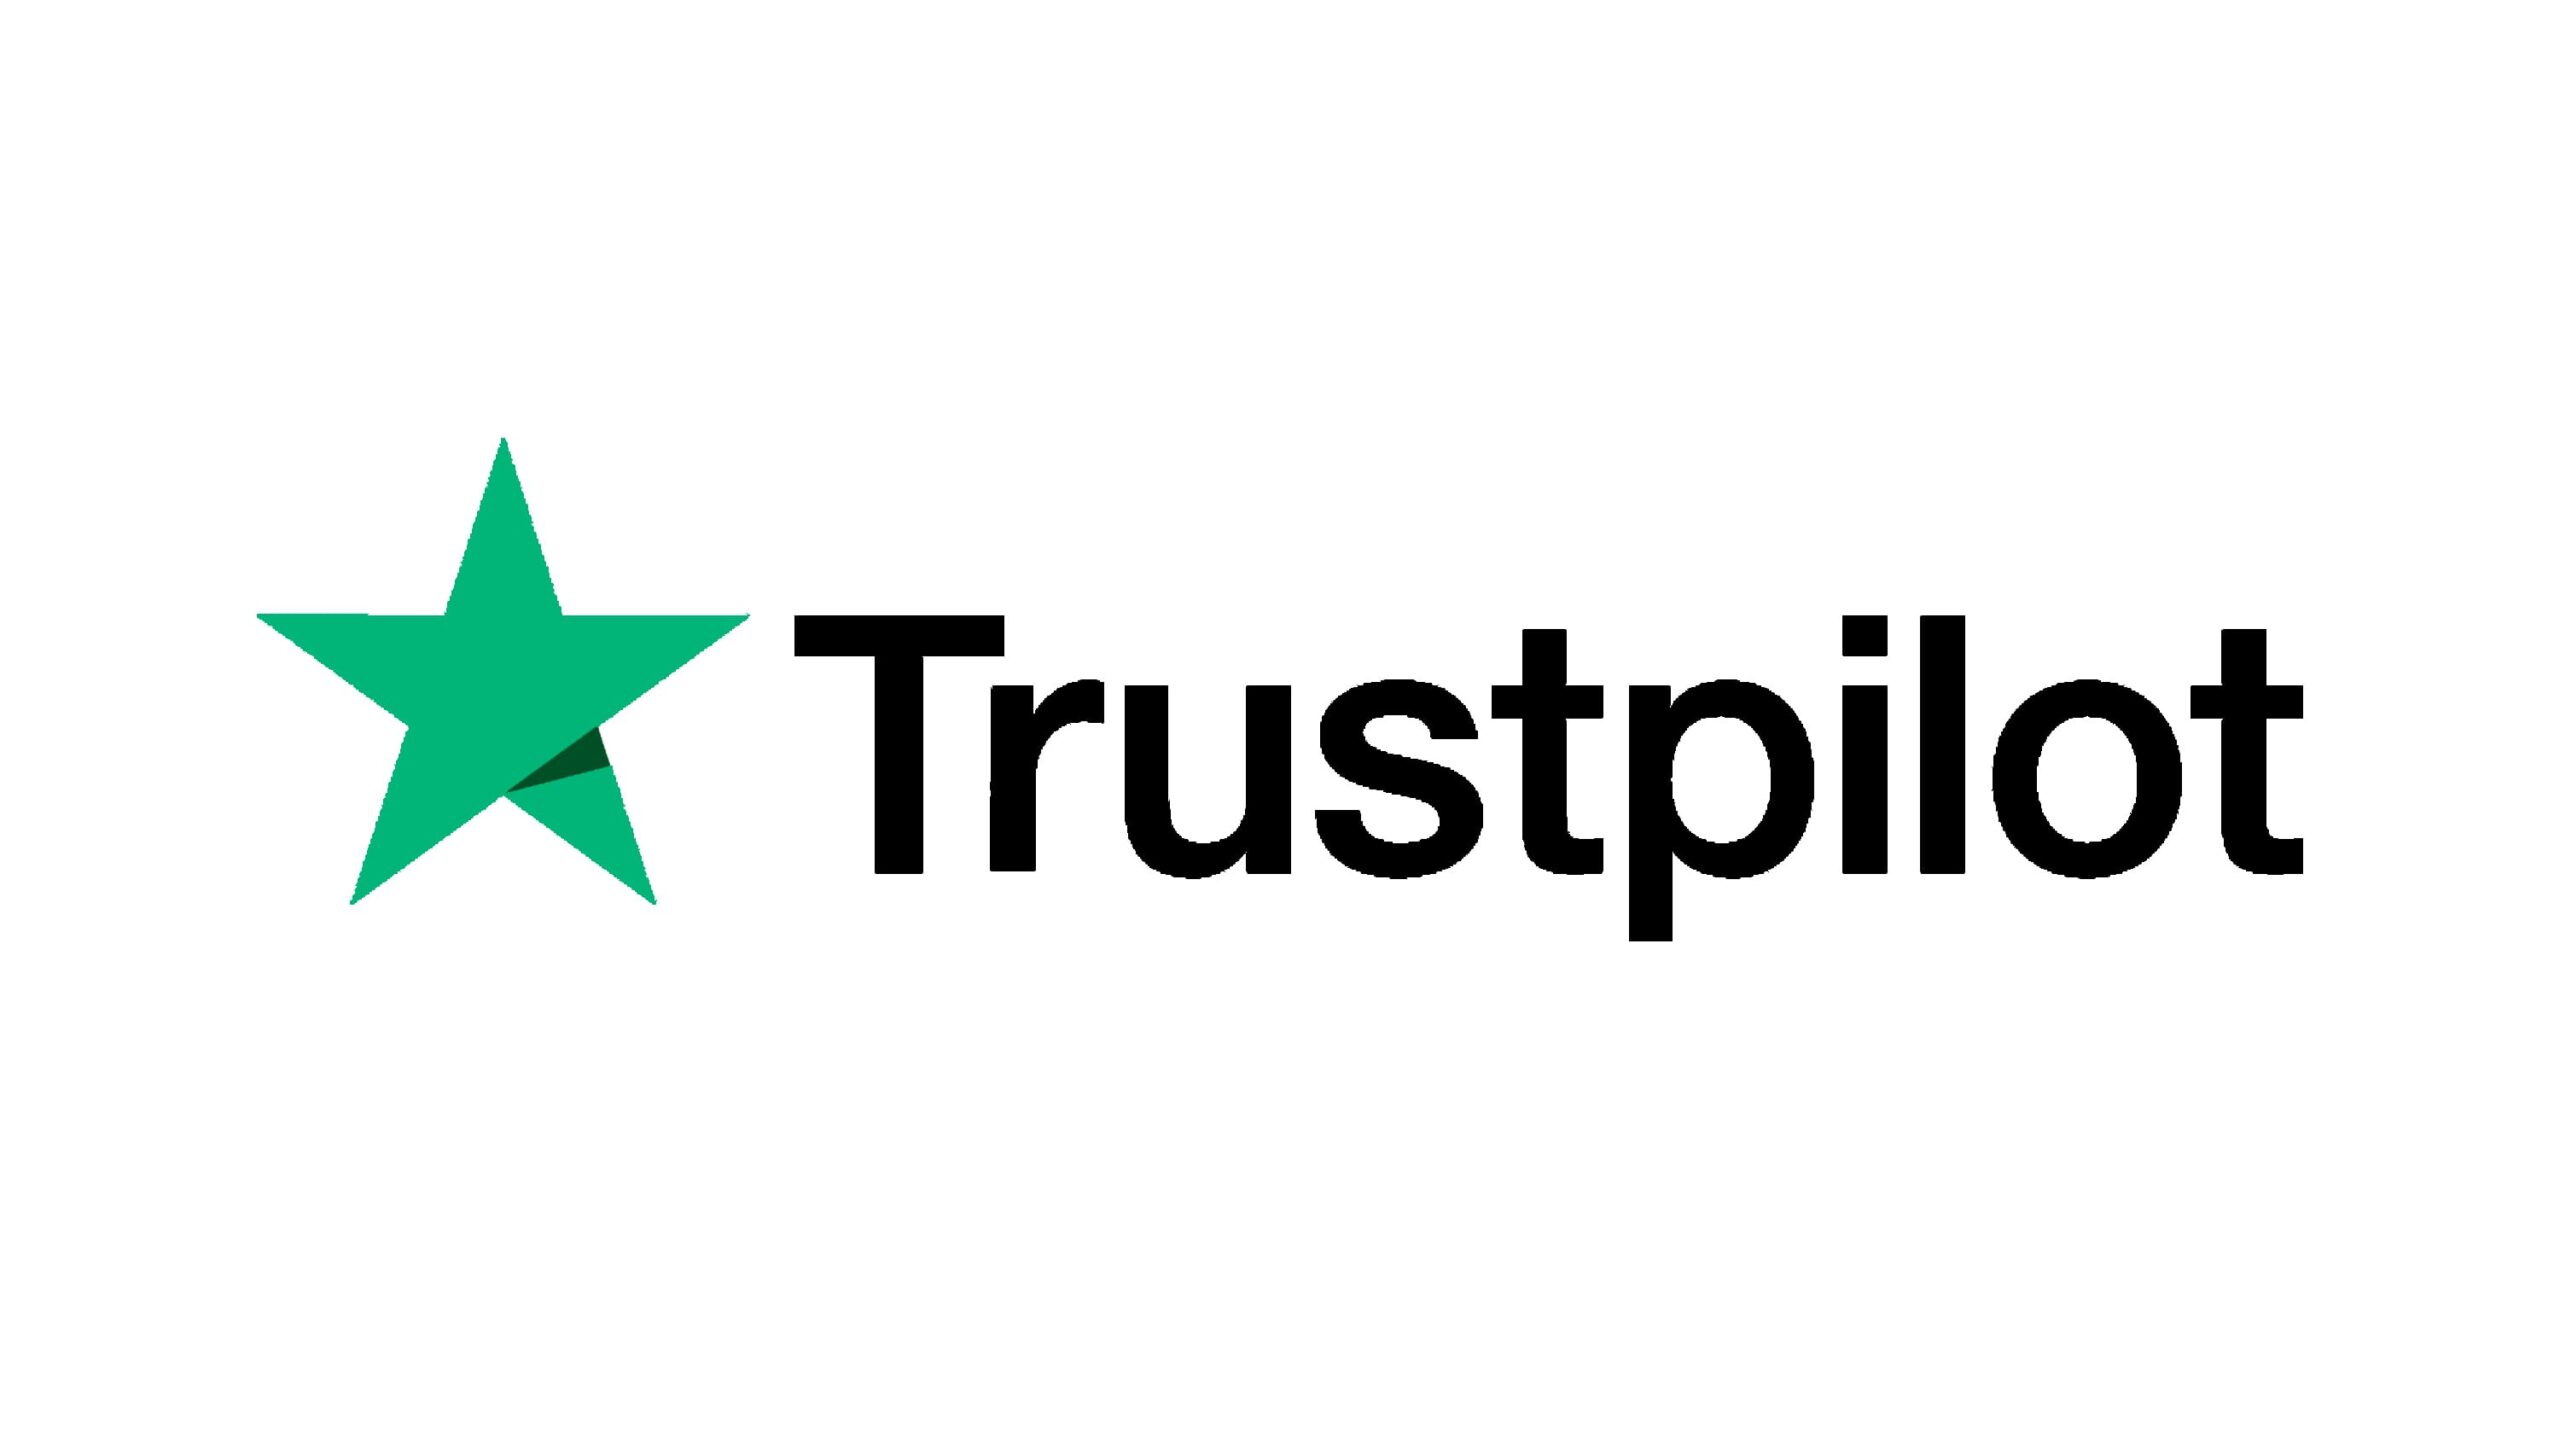 Trustpilot-logo